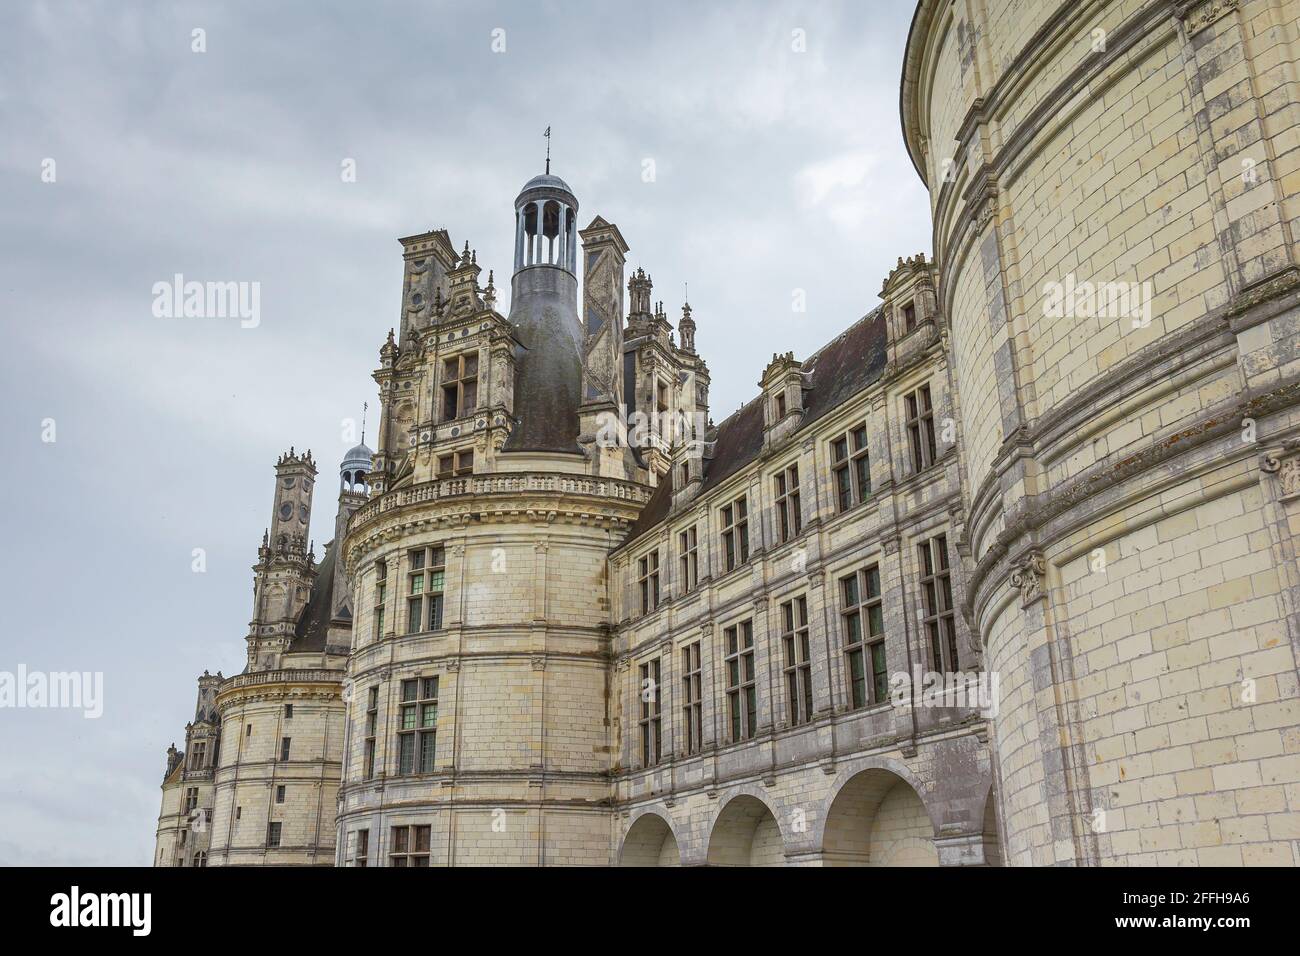 Nuvole scure e scenografia drammatica su Chateau Chambord . Castello con architettura rinascimentale francese molto distintiva Foto Stock